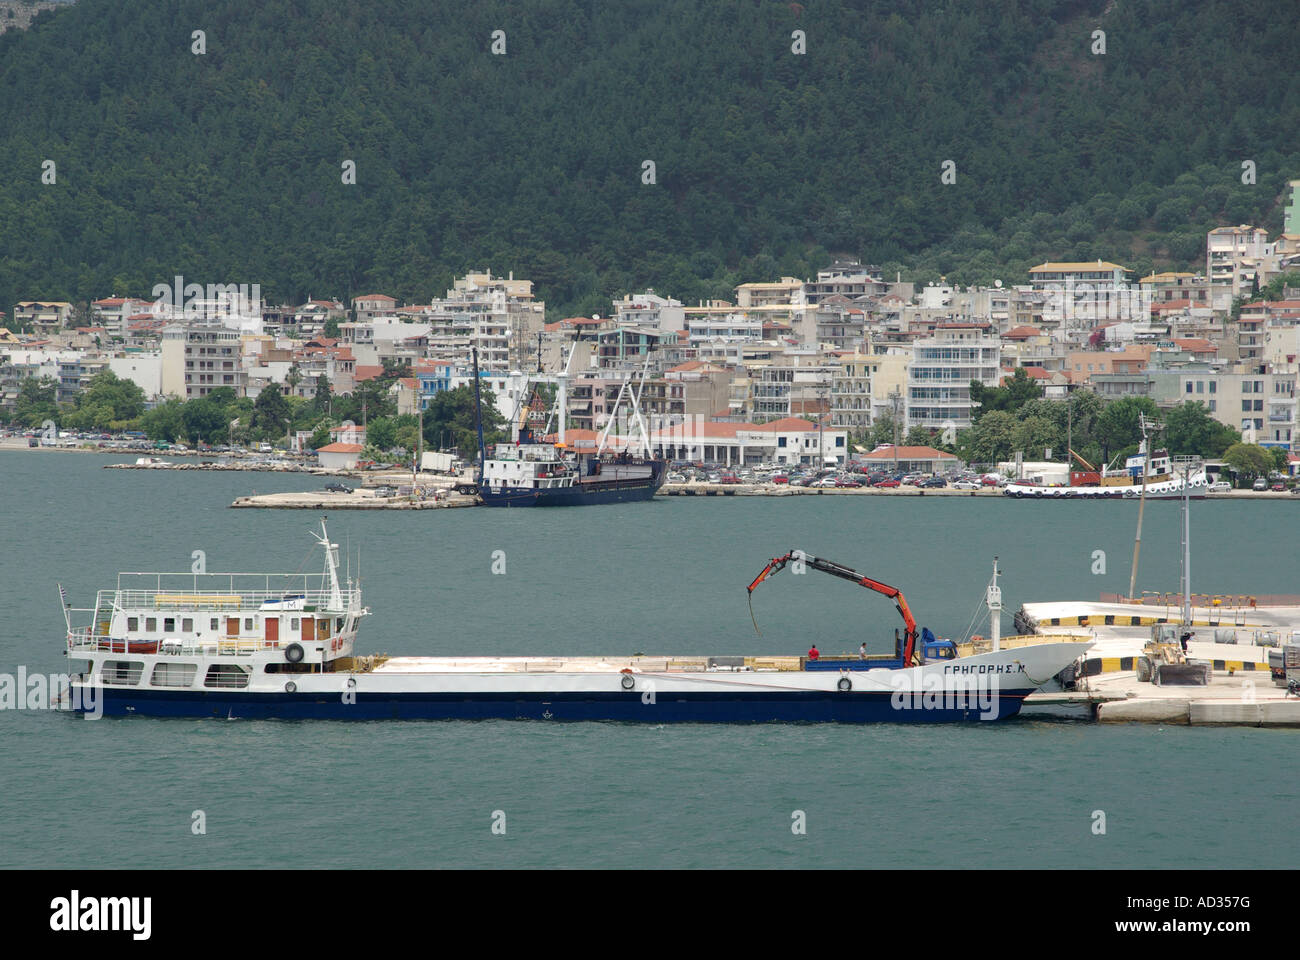 Porto di Igoumenitsa vista generale di una parte della zona portuale con la città al di là Foto Stock